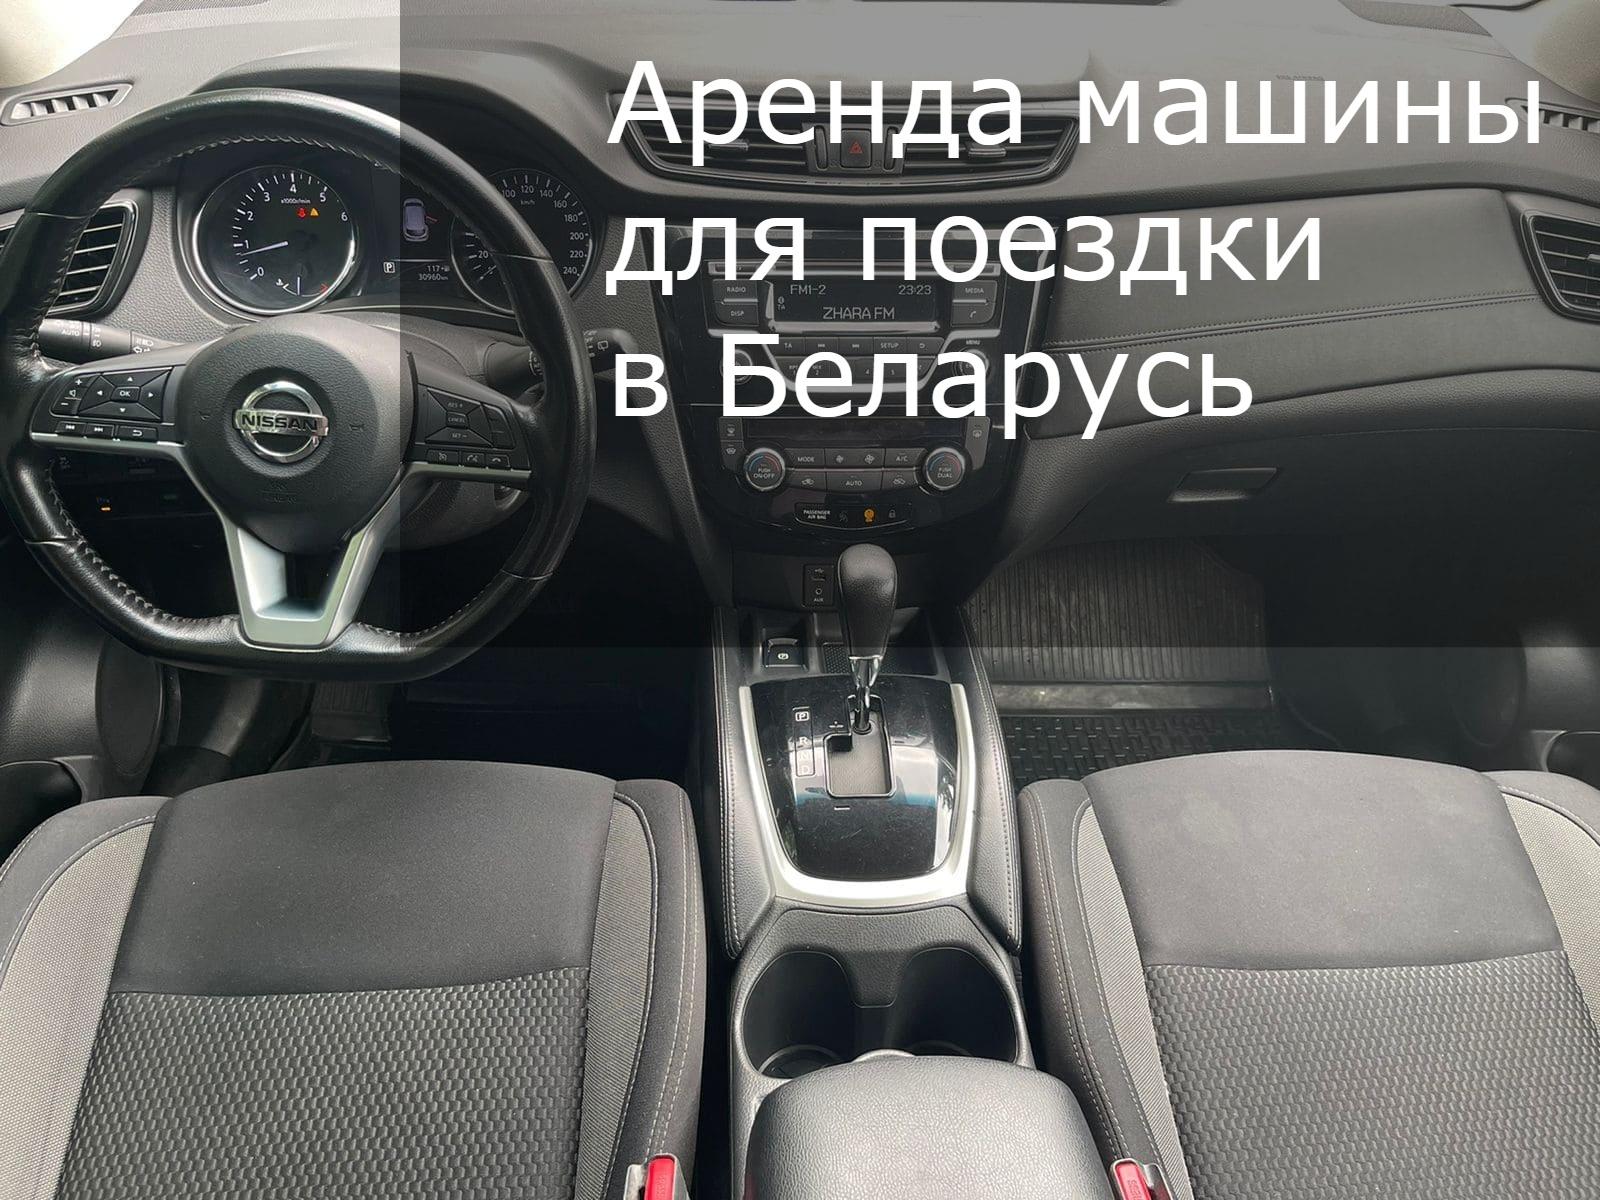 Прокат авто для поездки в Беларусь 